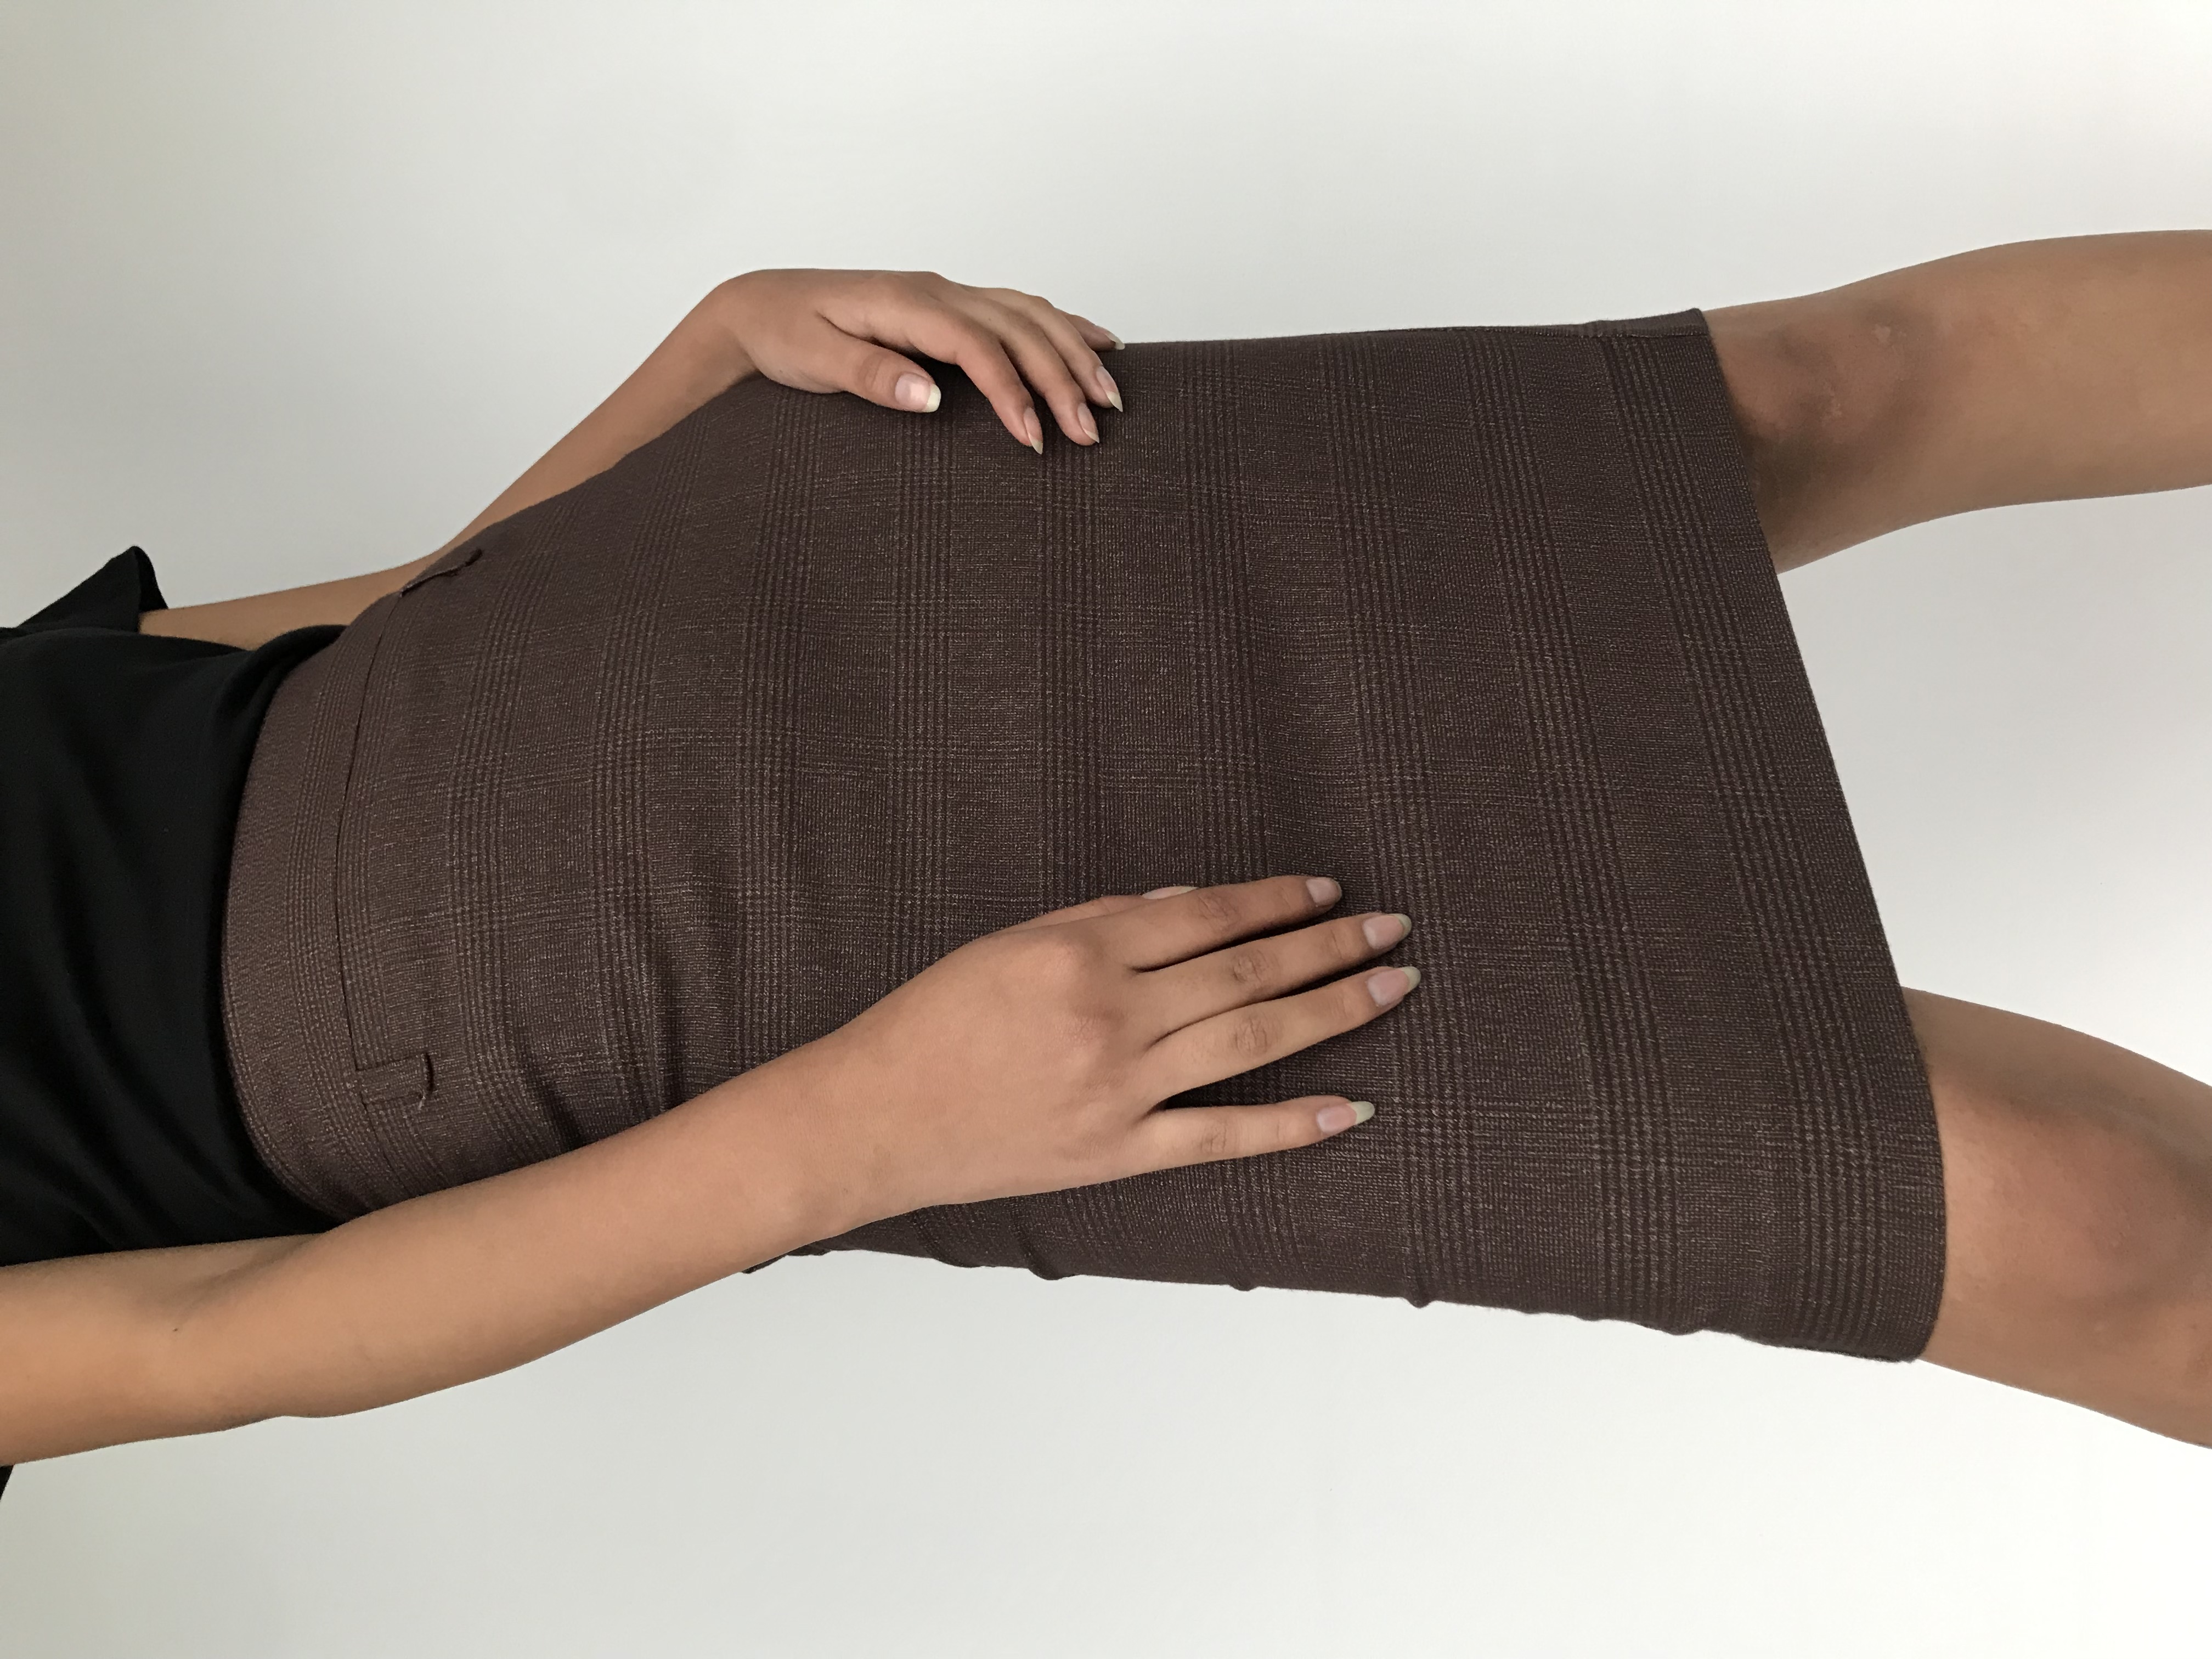 Falda marrón con líneas cruzadas al tono, pretina ancha, cierre posterior y abertura en la basta
Talla S